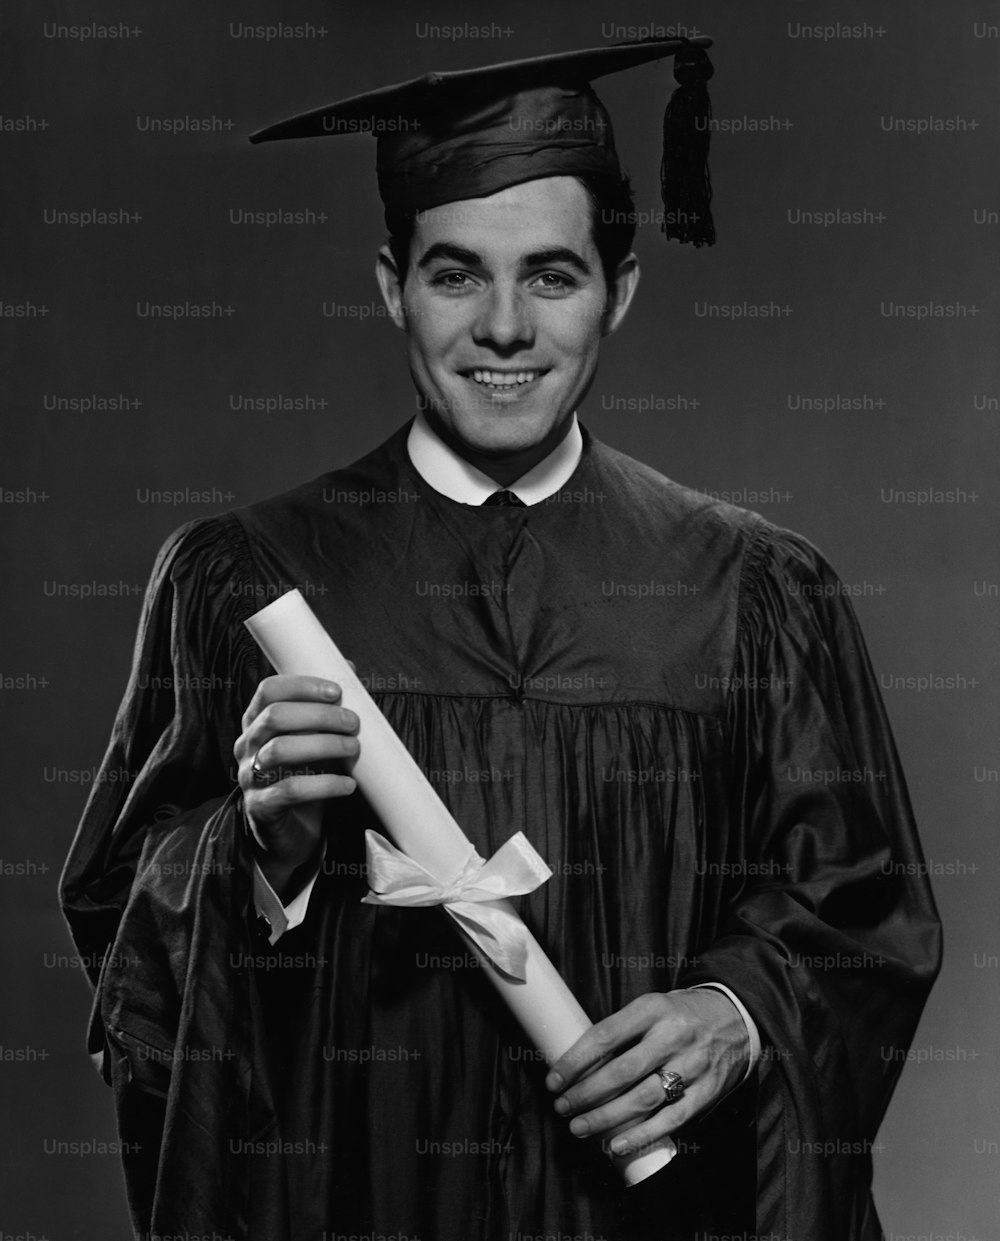 Um jovem em seu vestido de formatura e argamassa, segurando seu diploma, por volta de 1960. (Foto: George Marks/Retrofile/Getty Images)